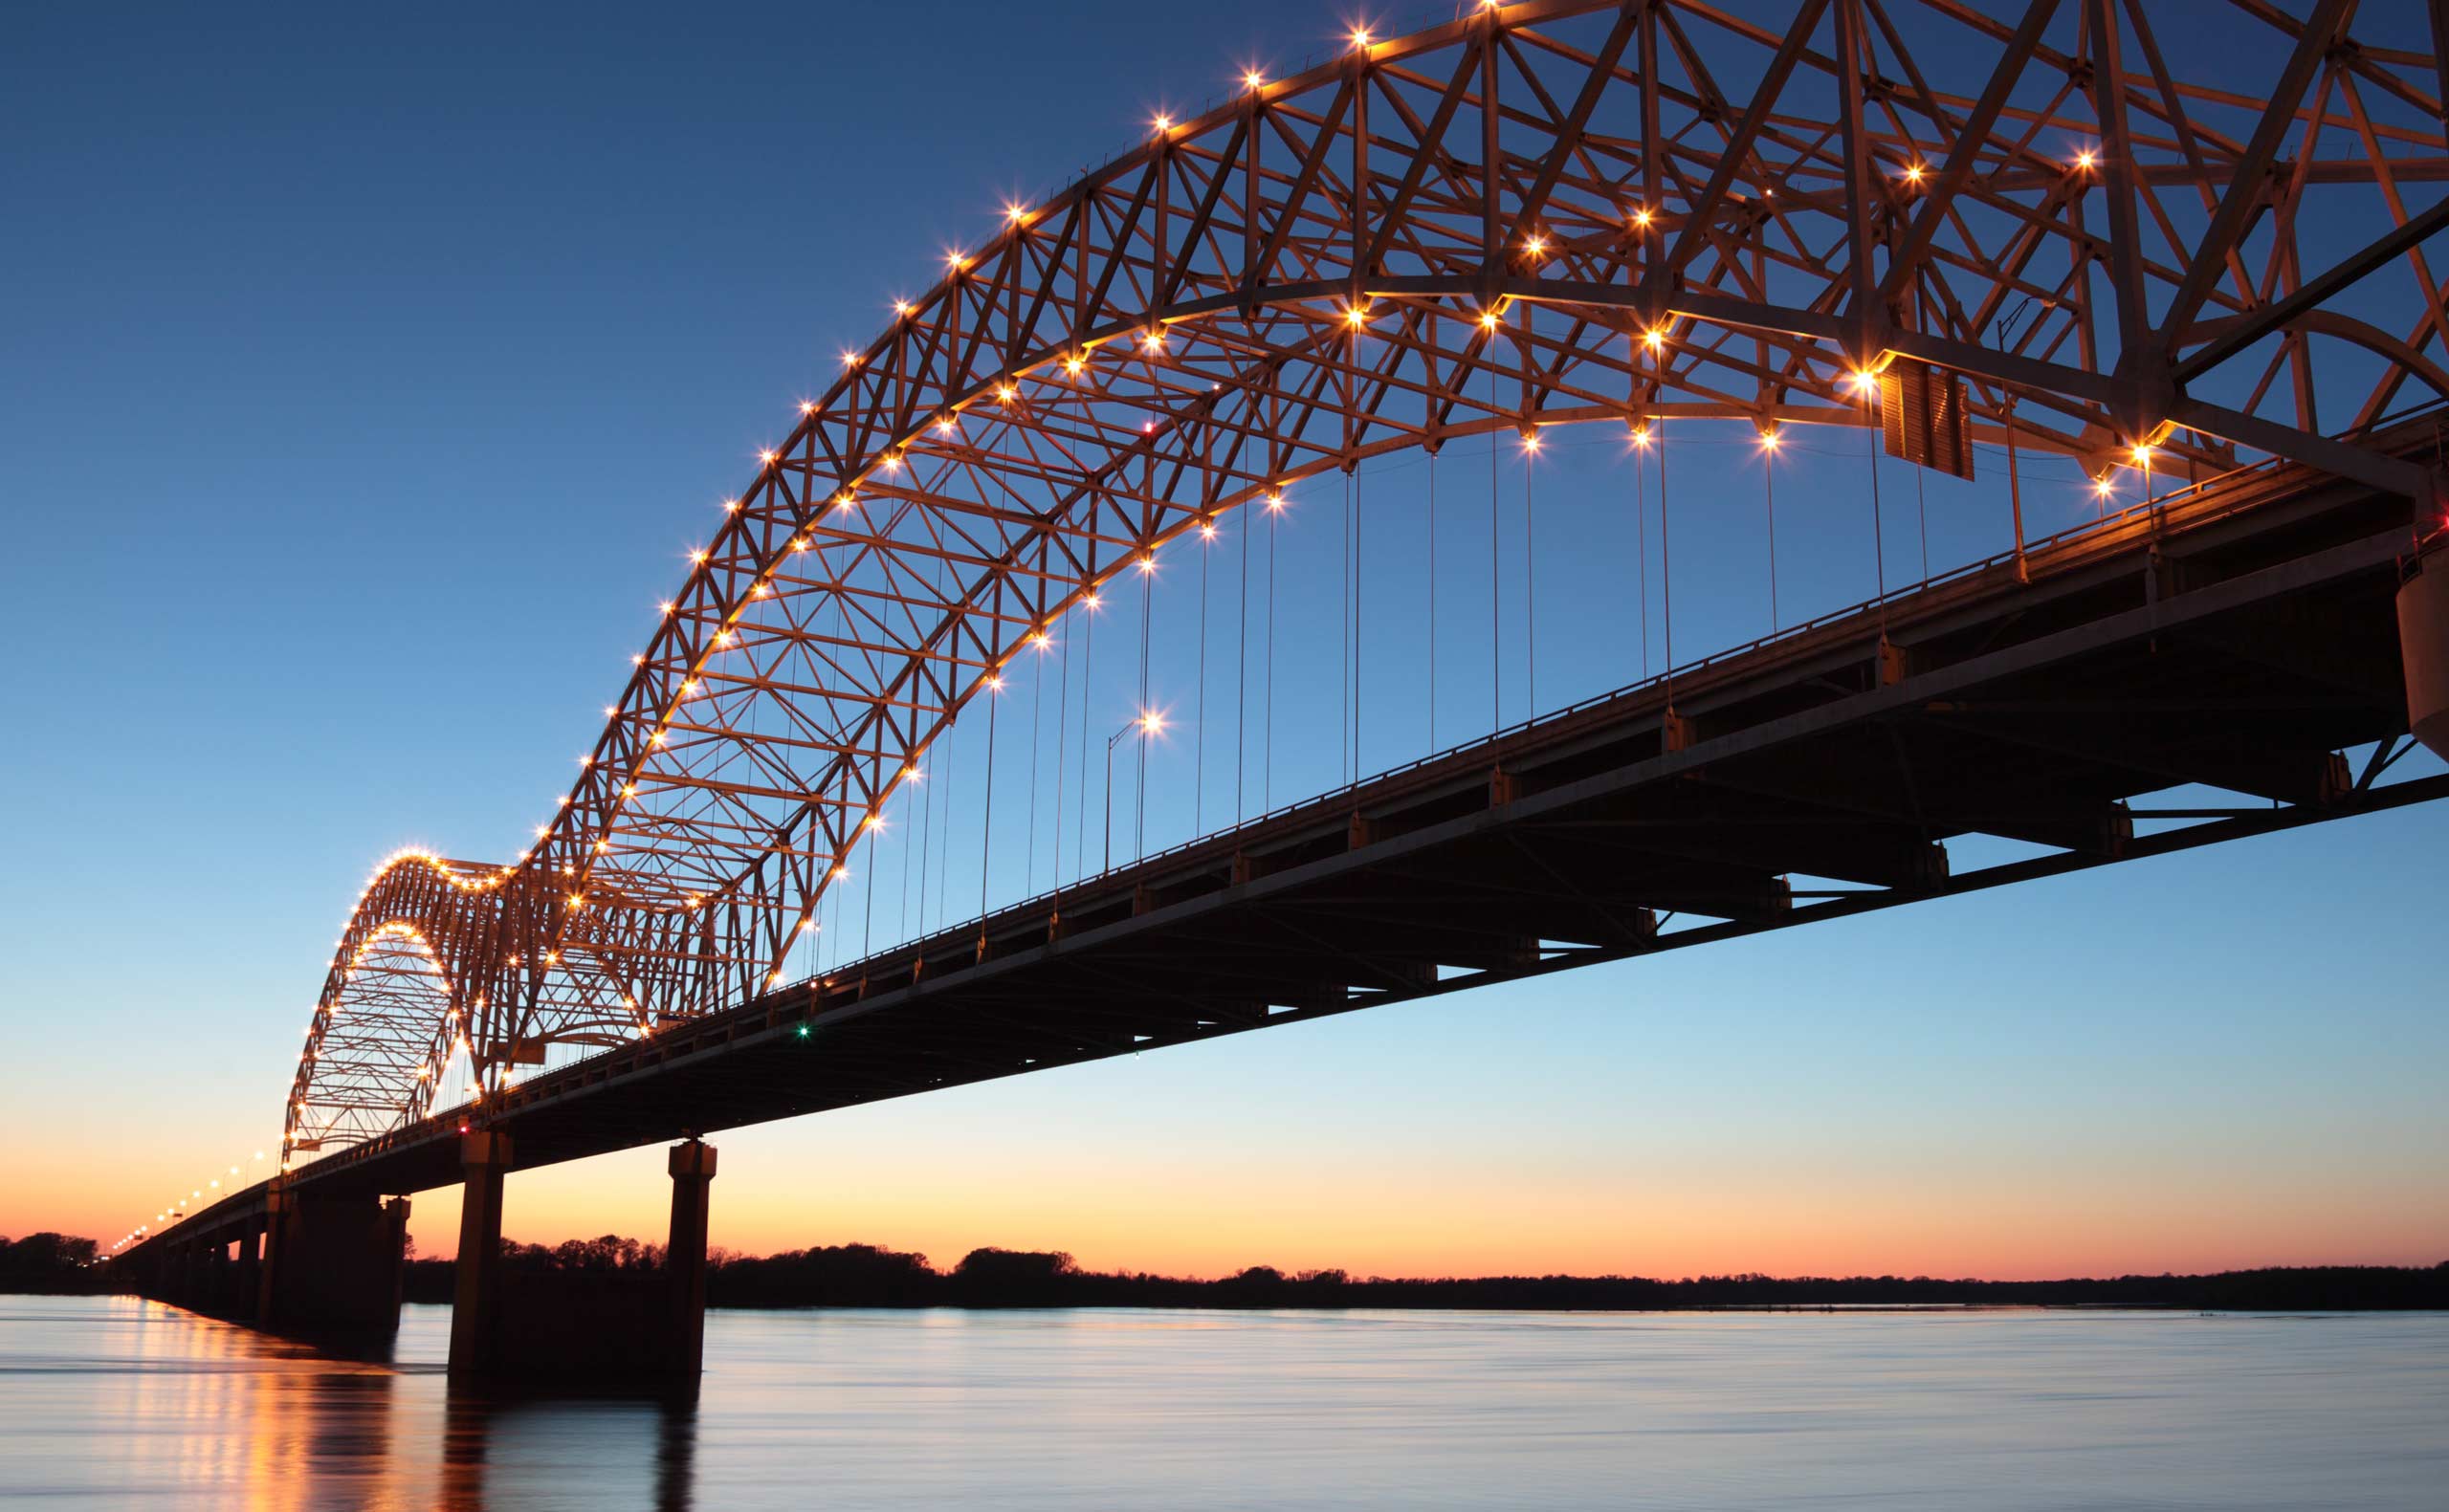 Memphis landscape with bridge over river